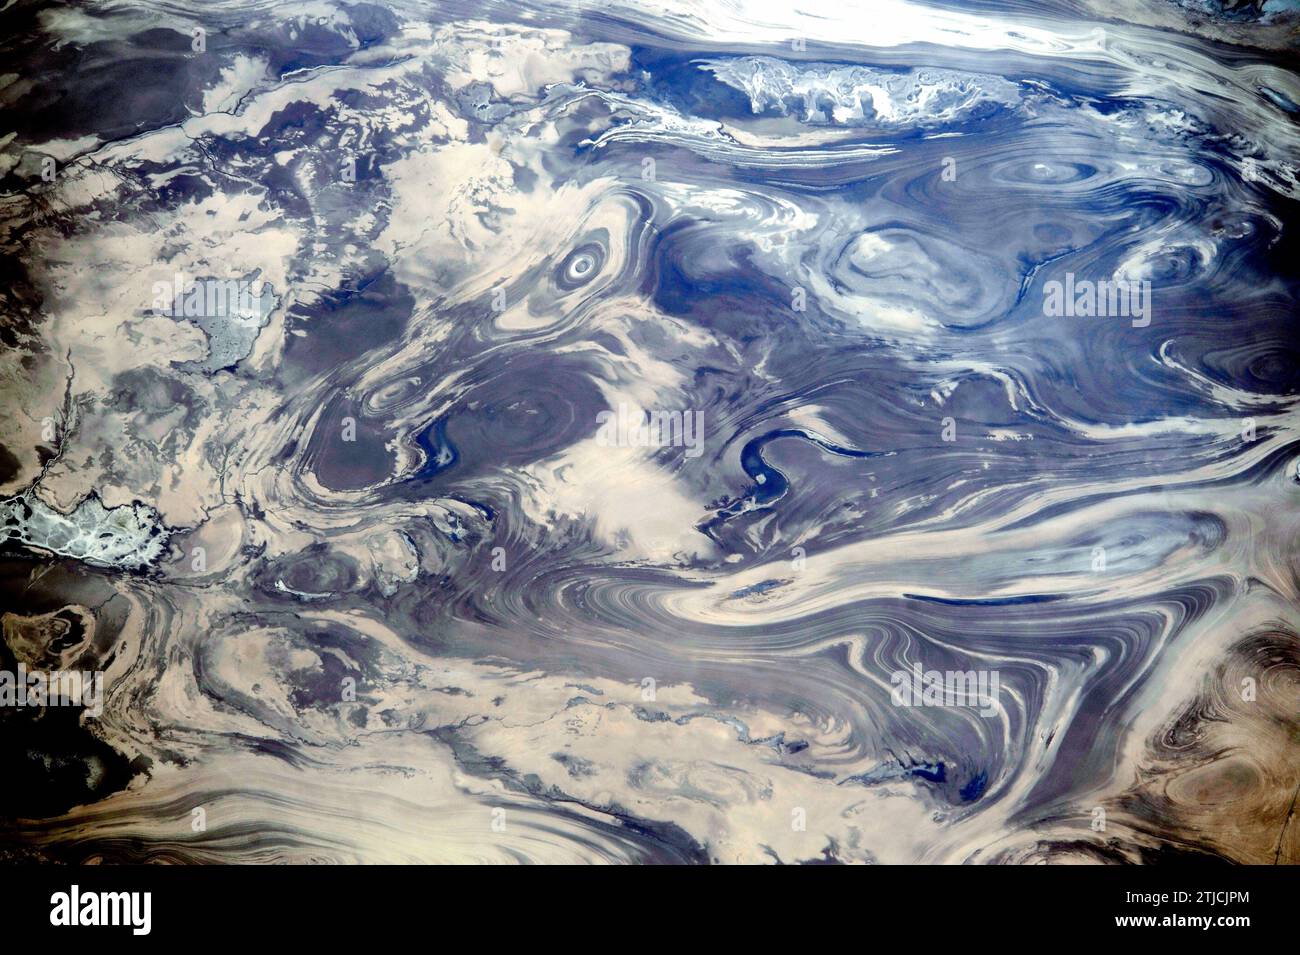 Iran. Dieses Bild wurde aufgenommen, als die Internationale Raumstation die Wüsten Zentralirans überquerte, einschließlich Kavir. Der Mangel an Boden und Vegetation ermöglicht es, die geologische Struktur der Felsen zu sehen. Die Muster ergeben sich aus der sanften Faltung zahlreicher dünner, heller und dunkler Gesteinsschichten. Das dunkle Wasser eines Sees (Mitte) nimmt eine Vertiefung in einer leicht erodierten, S-förmigen Schicht ein. Ein kleiner Fluss schlängelt sich am unteren Rand des Bildes. Es gibt nichts, was ein Gefühl von Skalierung vermitteln kann; die Bildbreite entspricht einer Entfernung von 65 km, eine optimierte Version eines Originalbildes der NASA / Credit: NASA Stockfoto